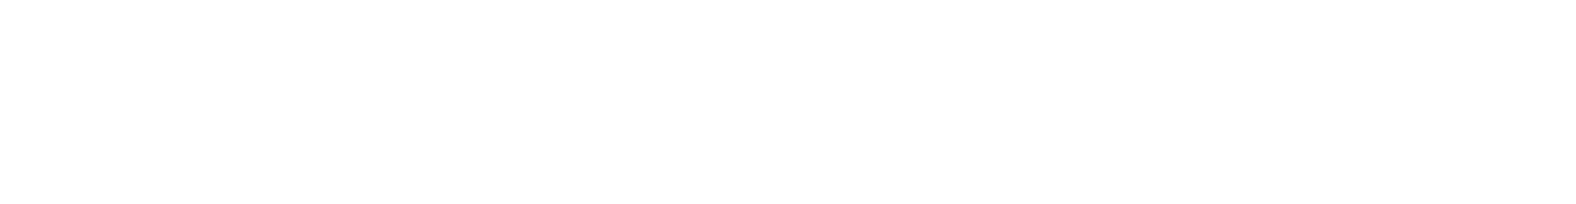 Colgate-Palmolive logo large for dark backgrounds (transparent PNG)